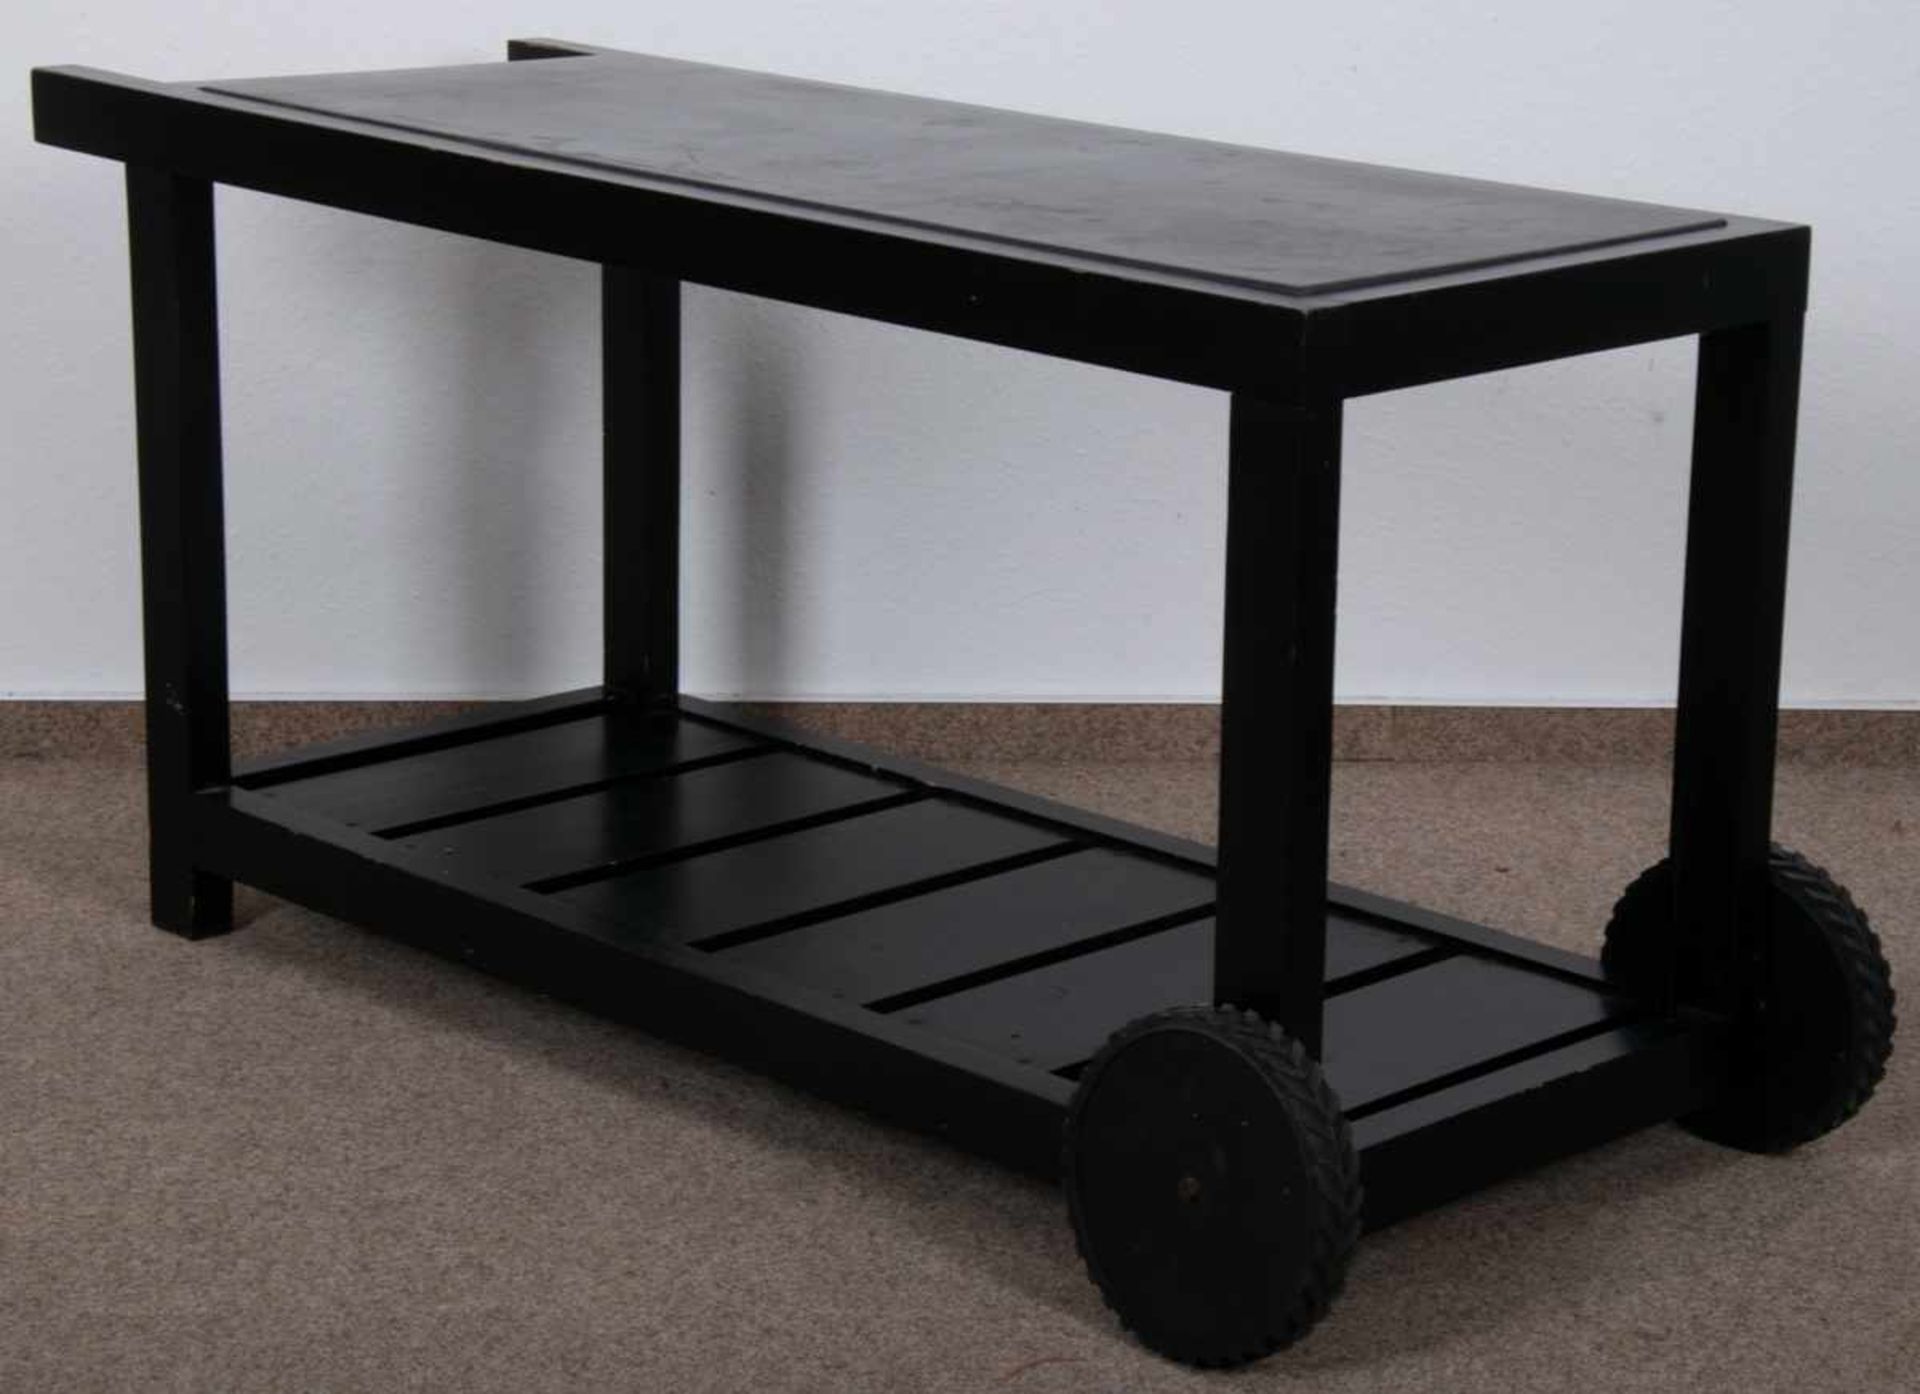 Rollbarer Gartentisch, schwarz lackiertes Nadelholz auf Kunststoffrollen gelagert/bedingt beweglich, - Bild 5 aus 6